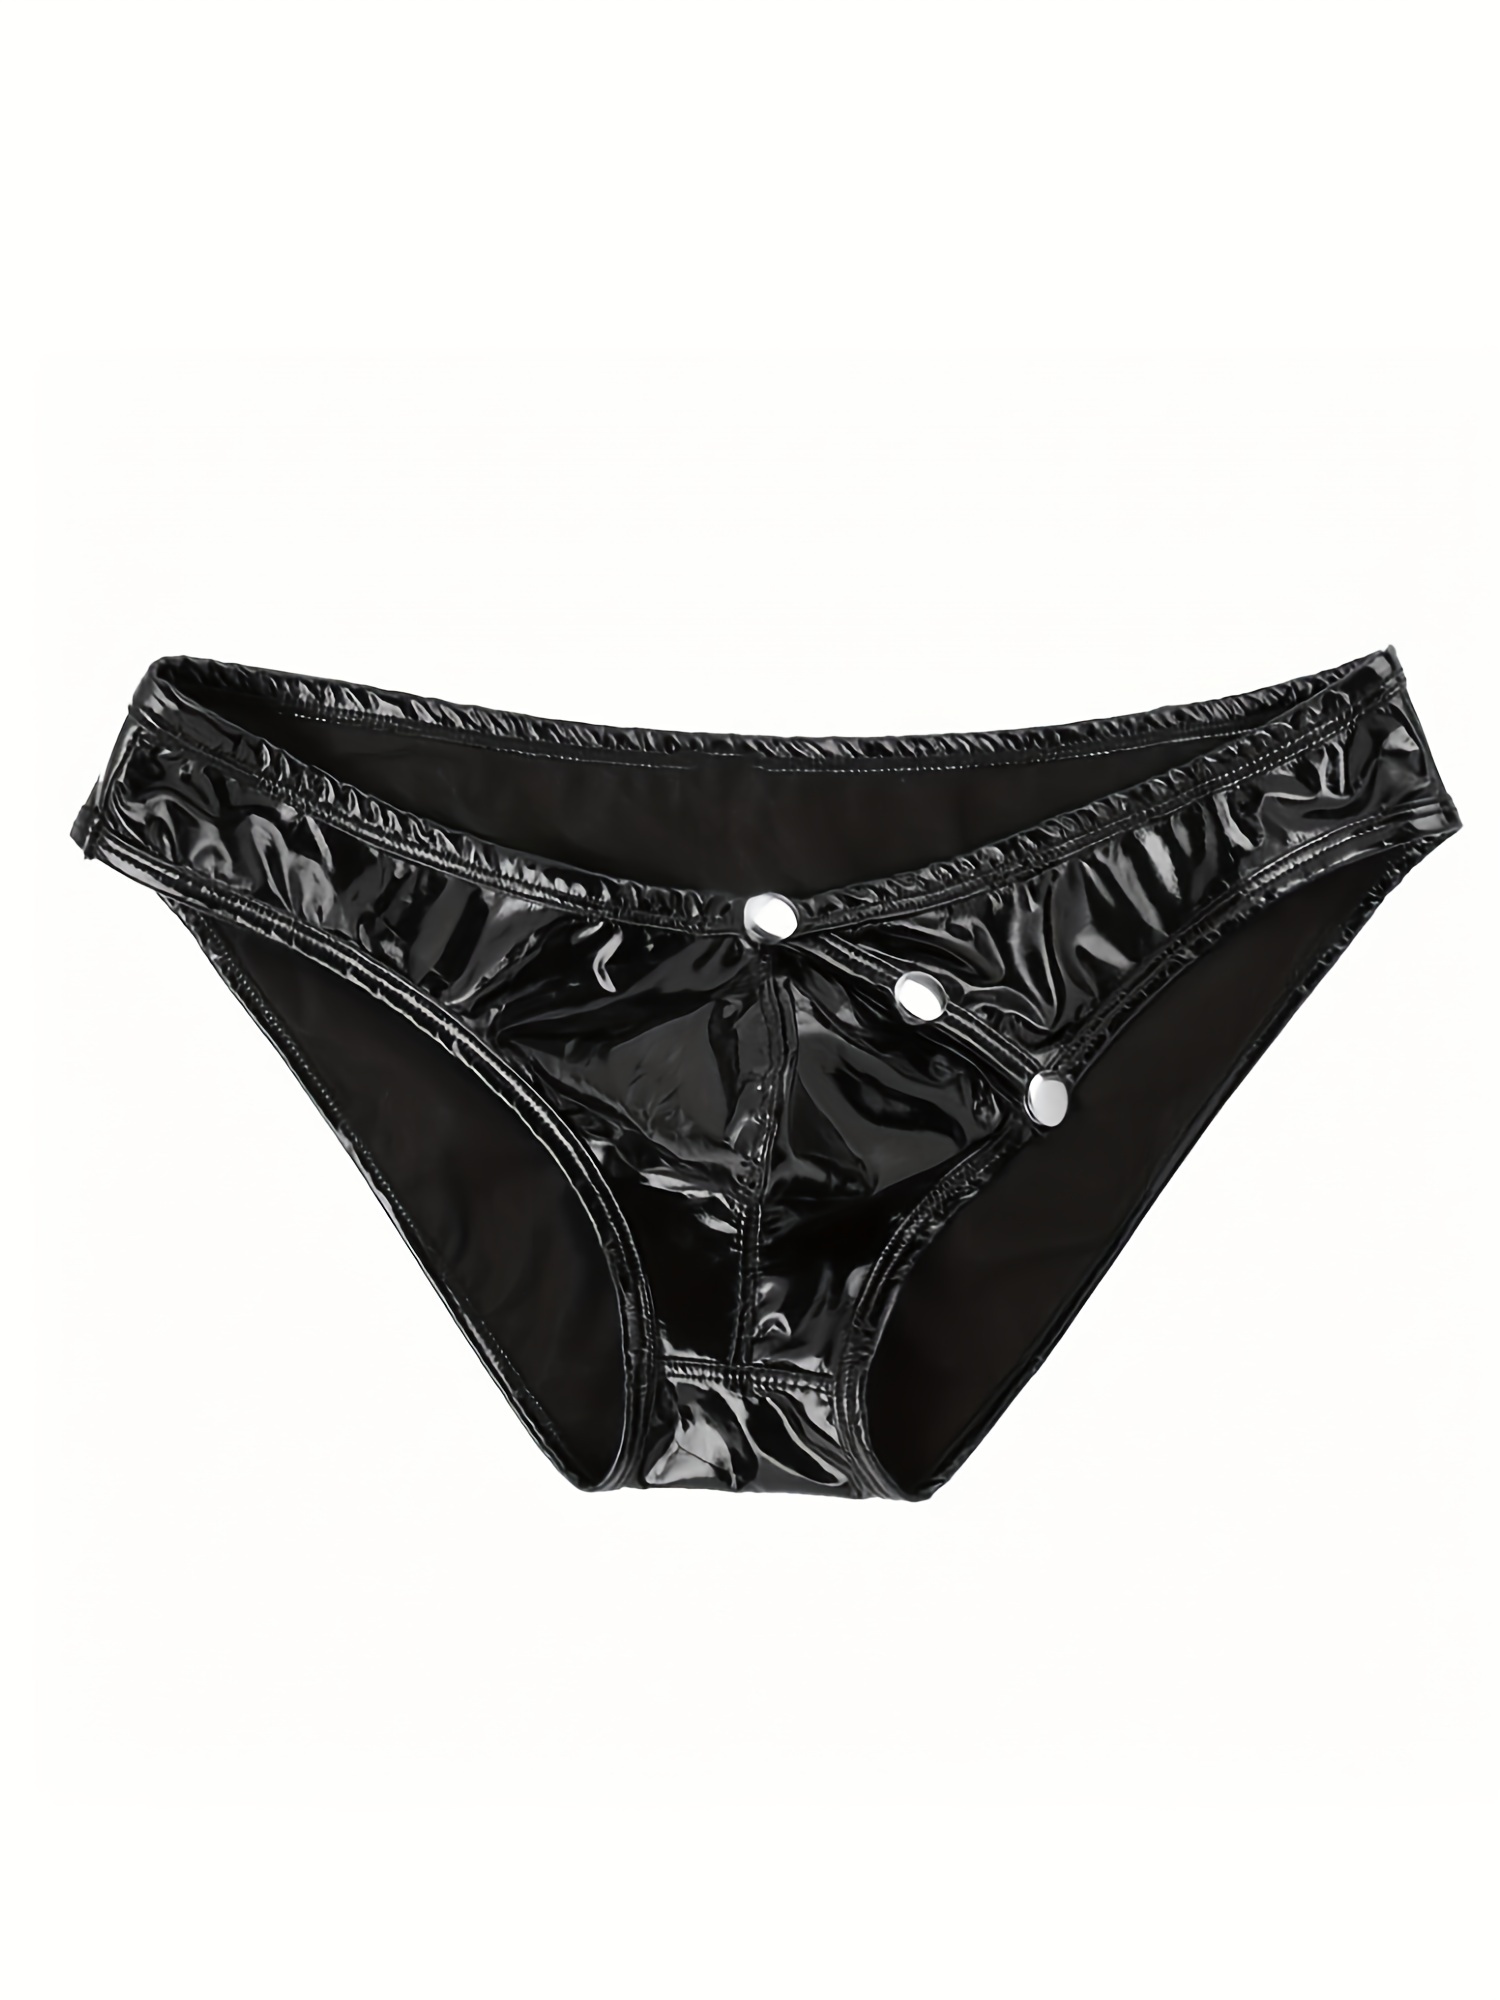 Men's PVC Leather Briefs Underwear Low Waist Bulge Pouch Panties Underpants